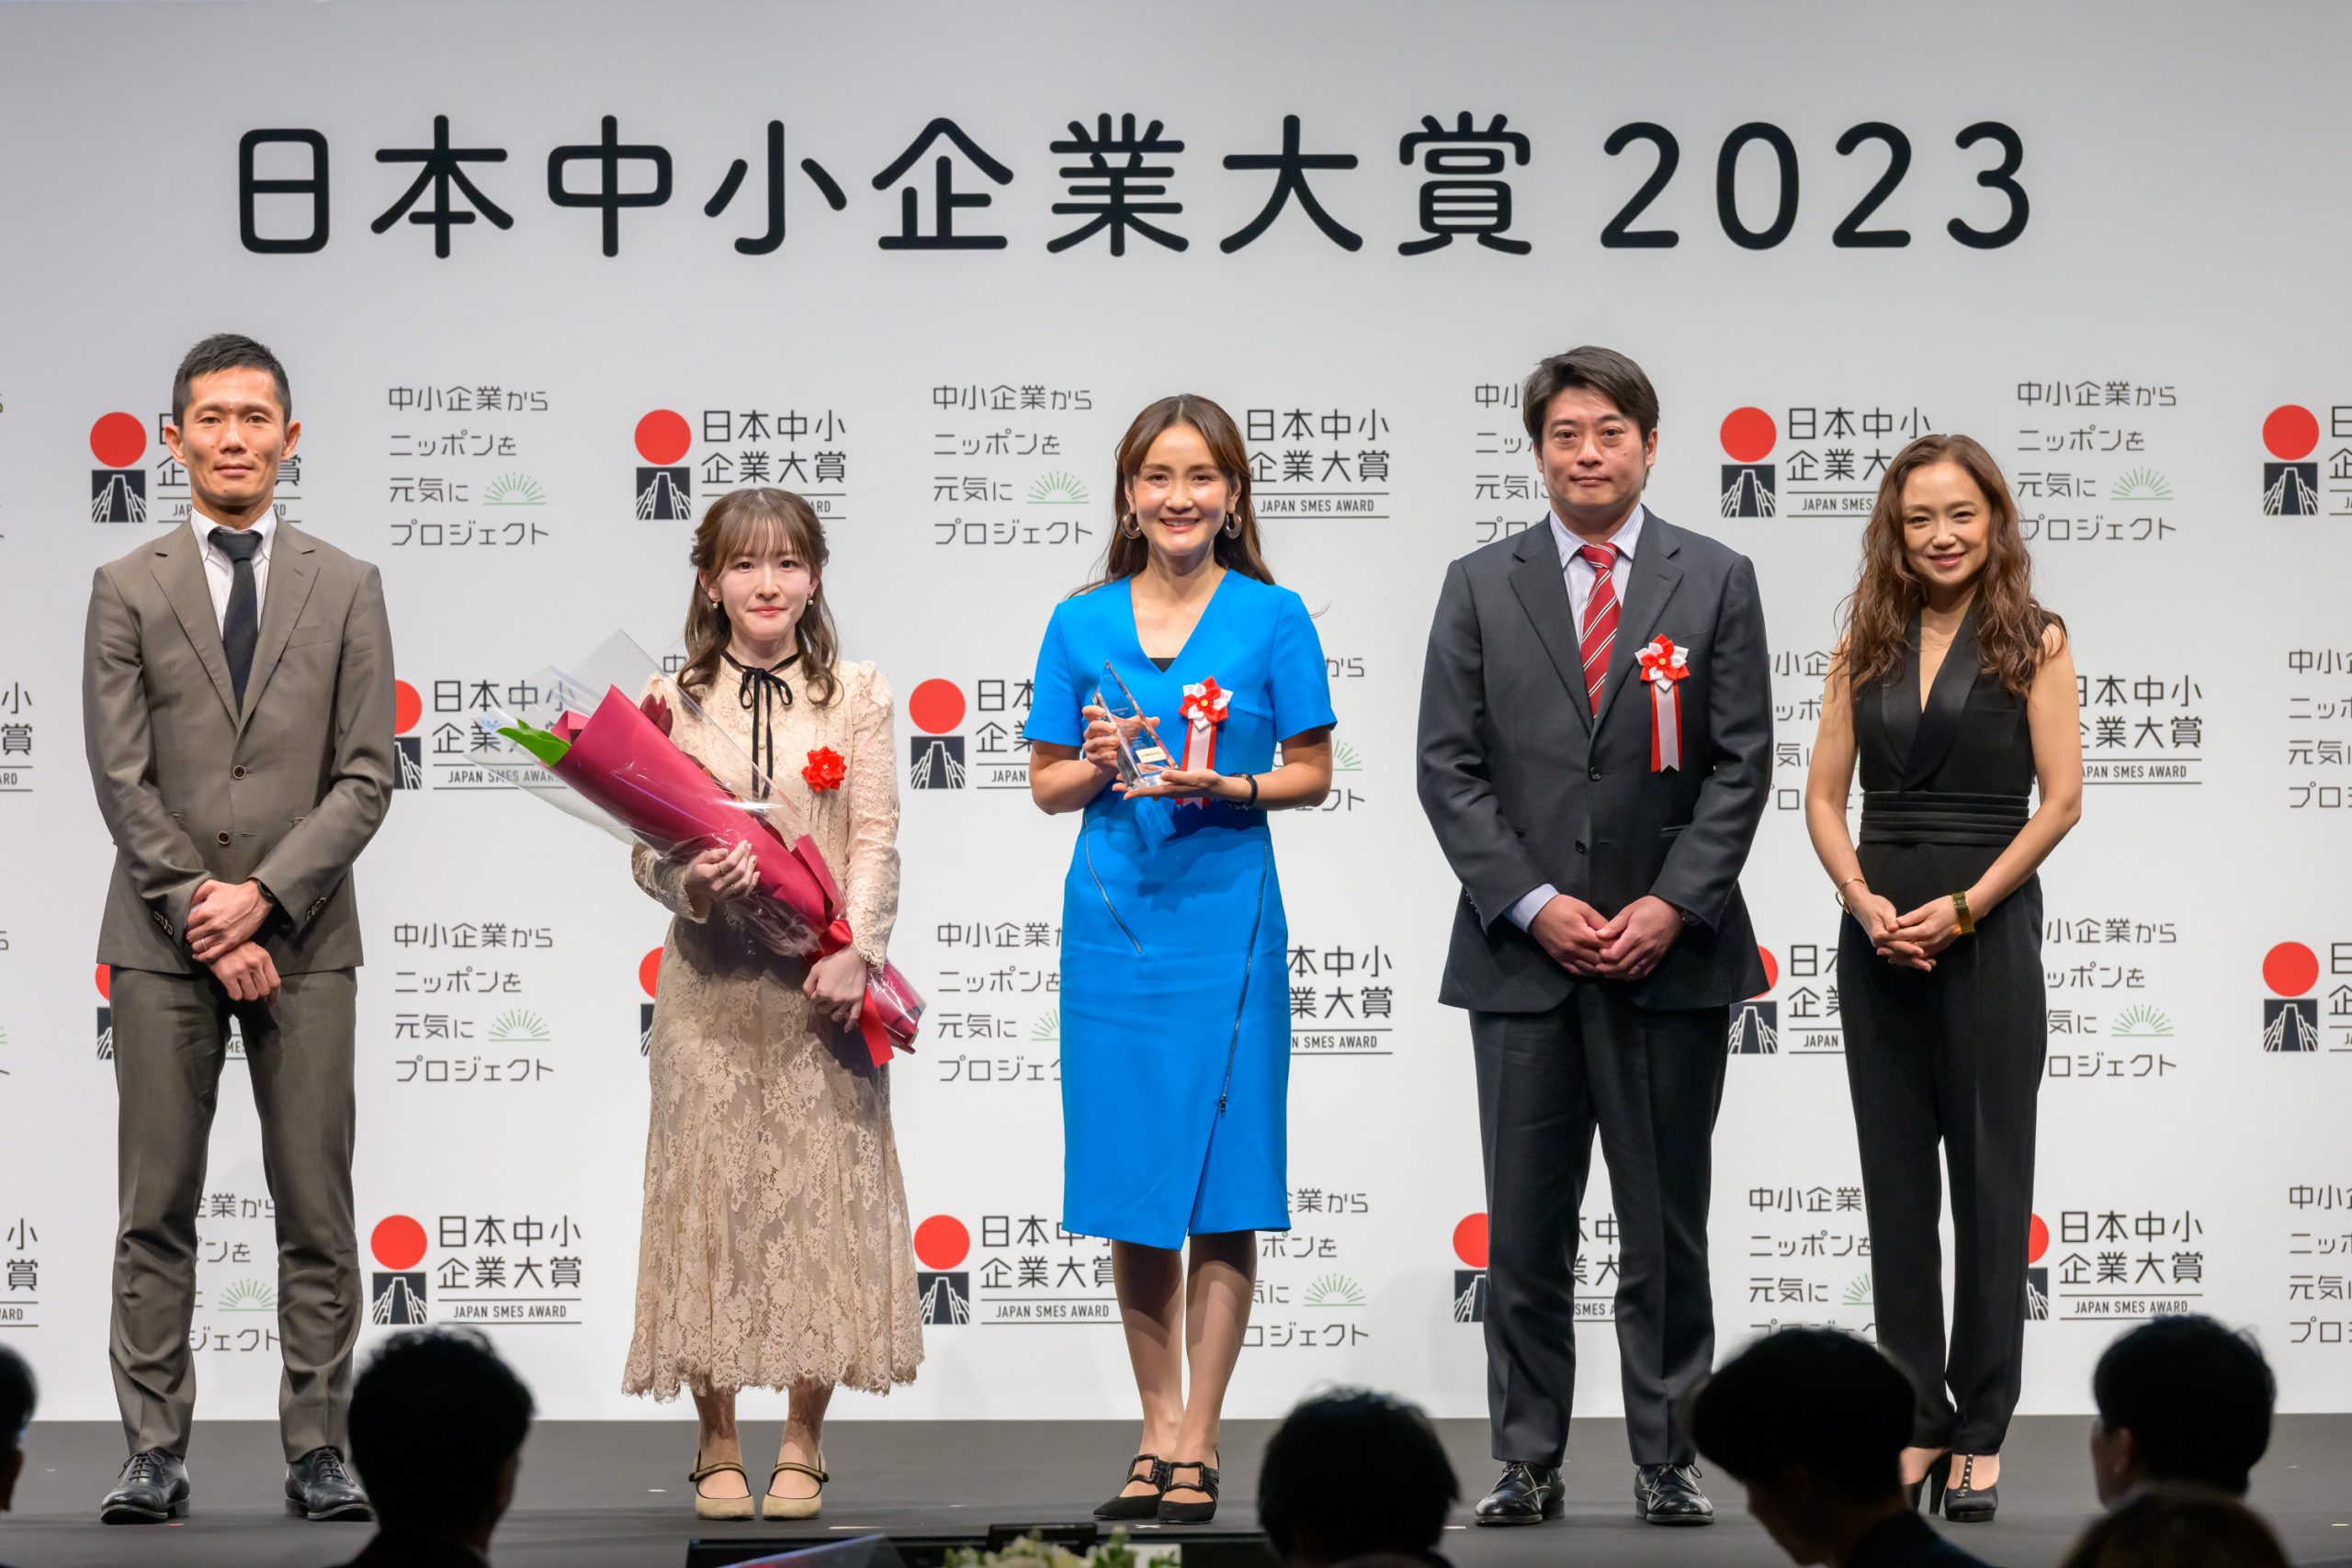 日本中小企業大賞2023にて働き方改革賞最優秀賞頂きました‼